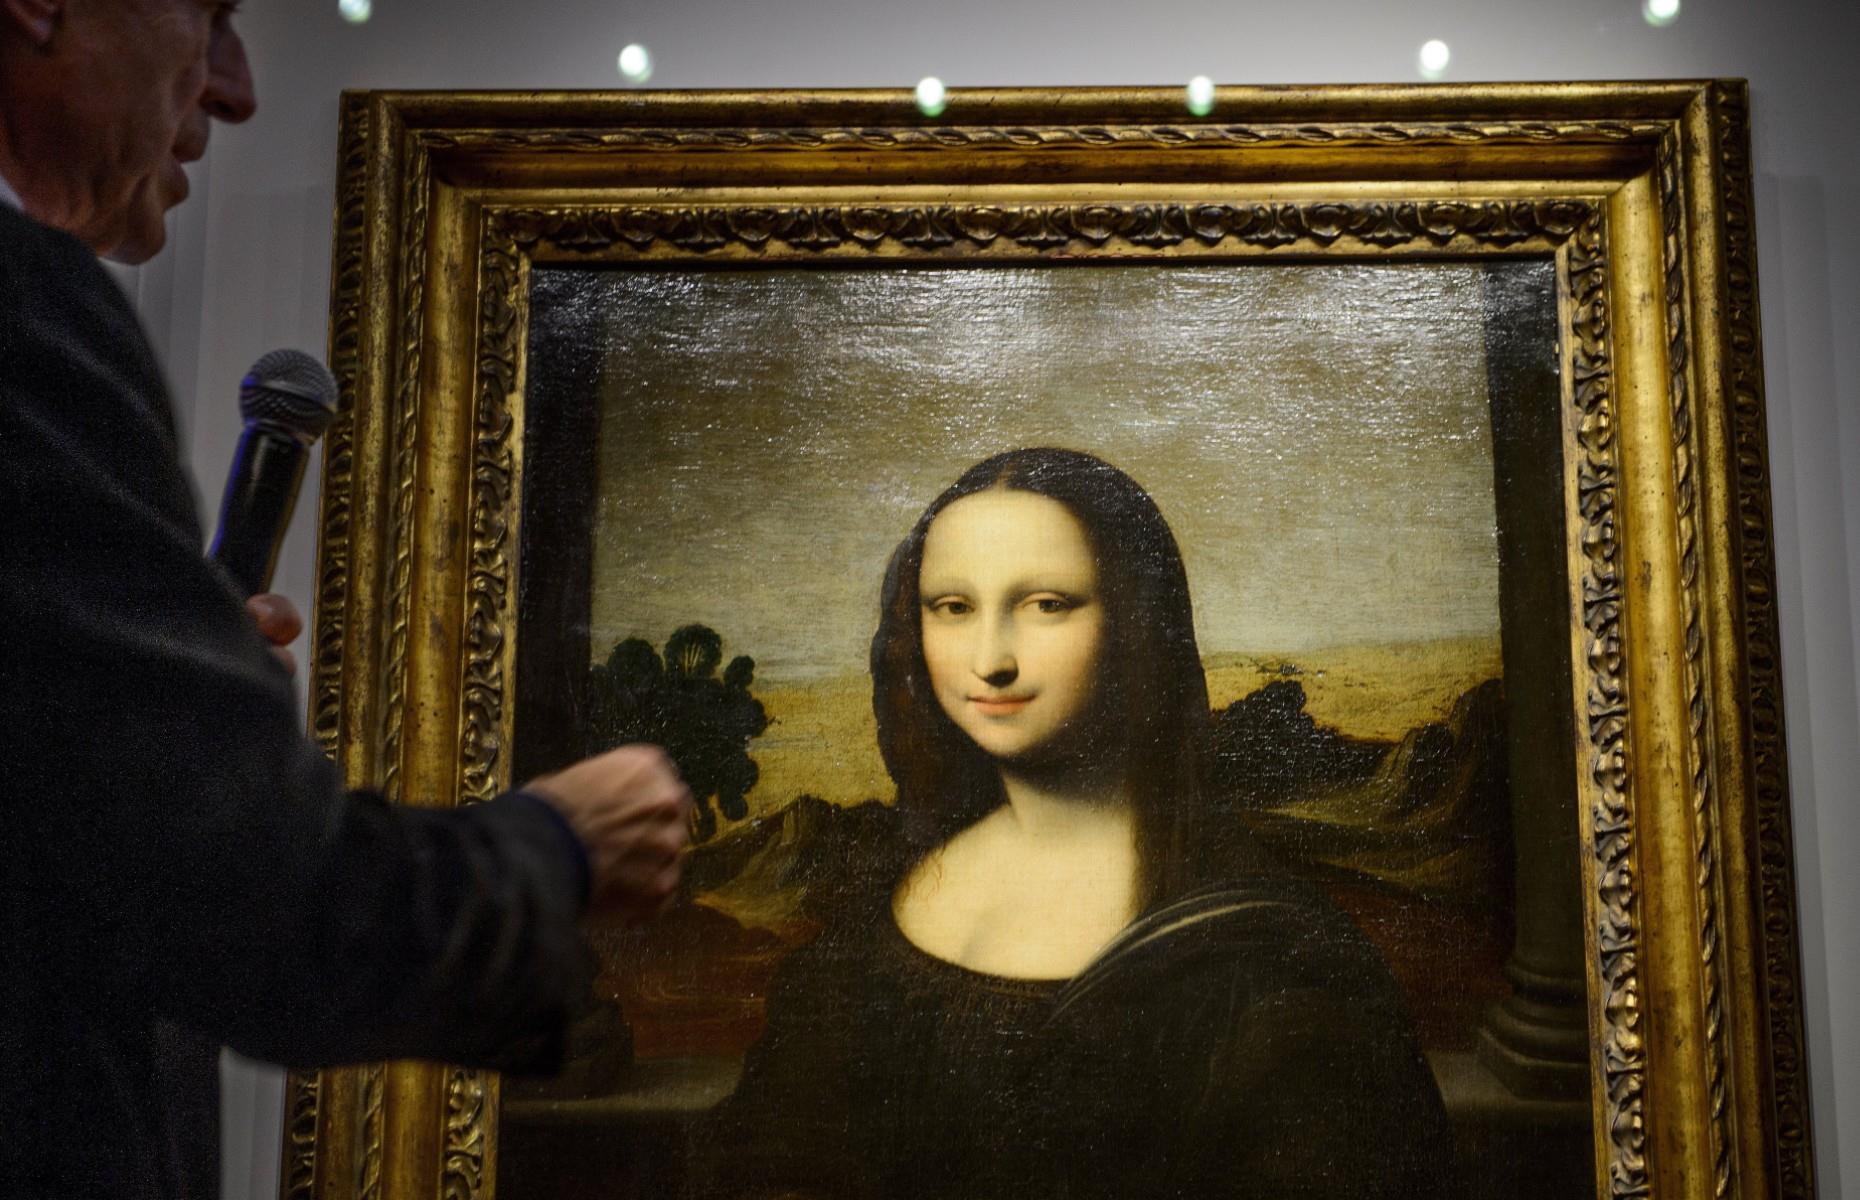 The earlier Mona Lisa 